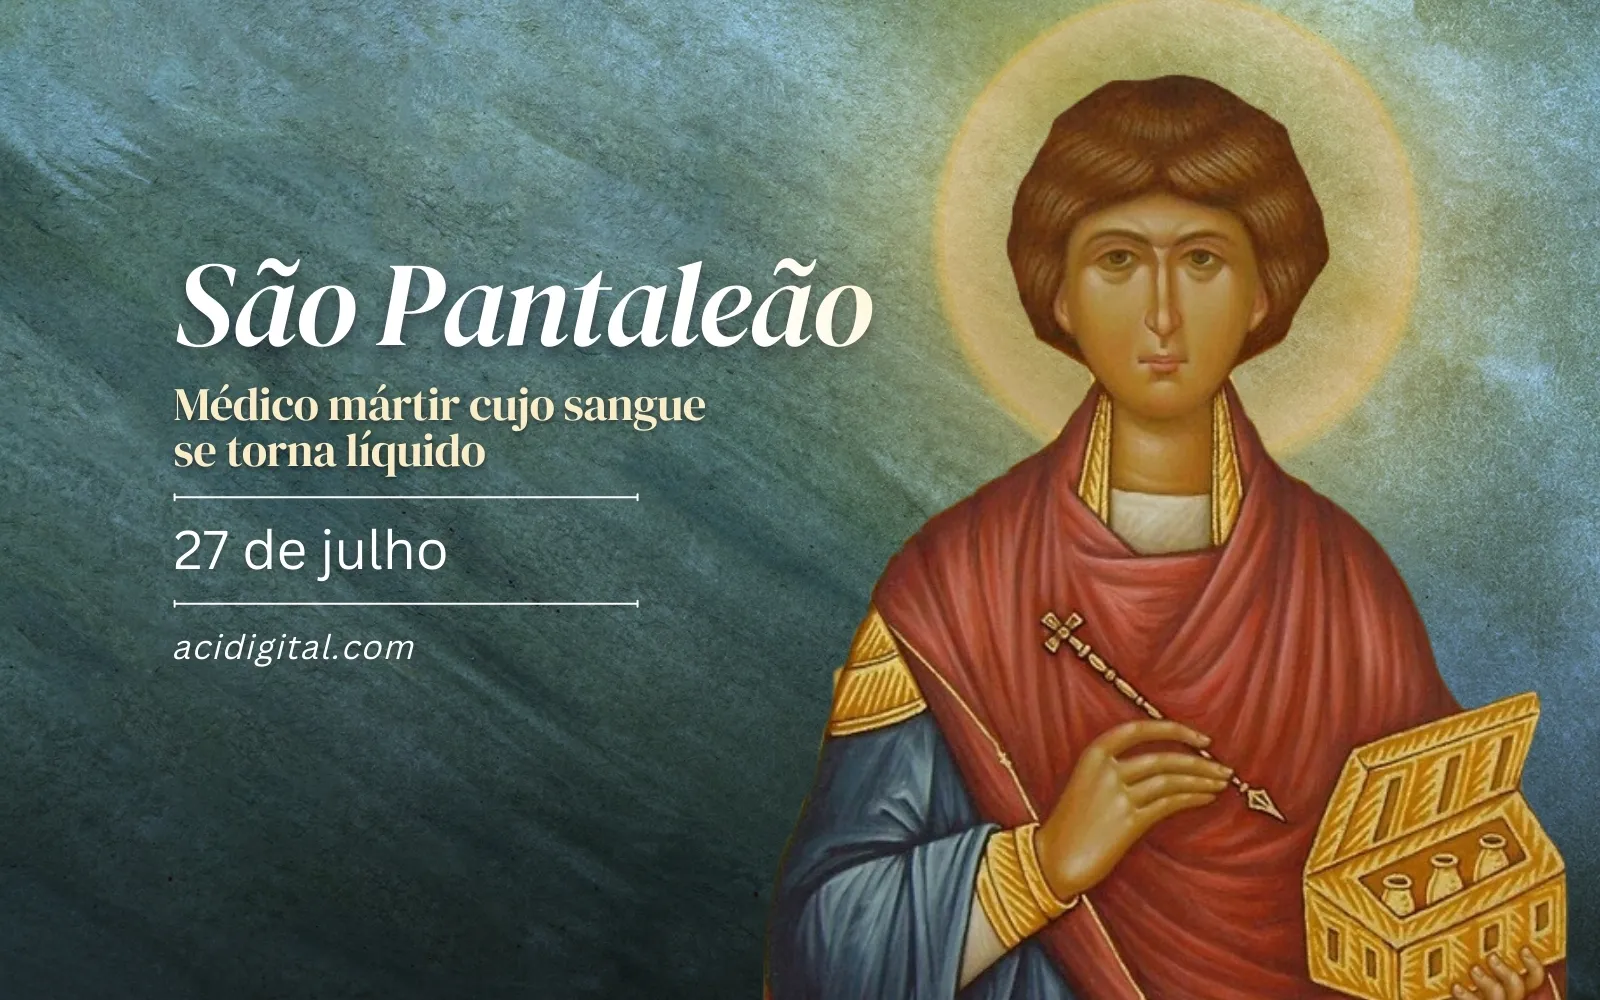  Hoje é celebrado são Pantaleão, médico mártir cujo sangue se torna líquido 